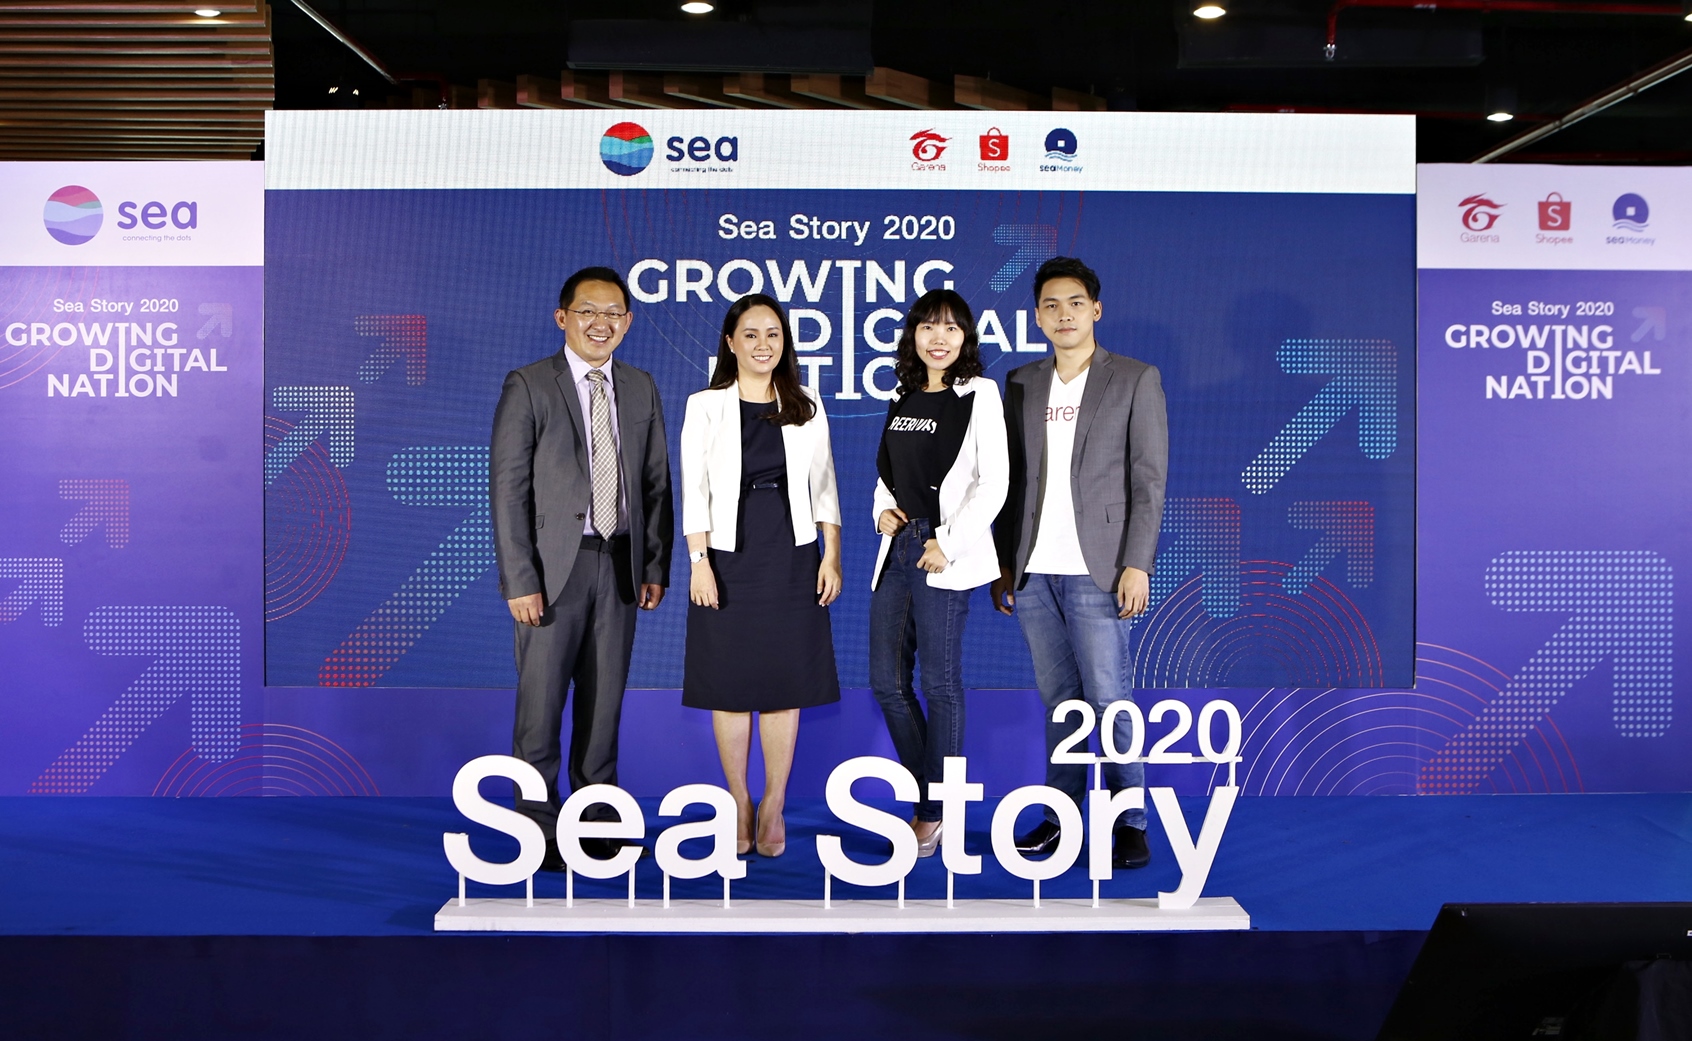 Sea (ประเทศไทย) ชูวิสัยทัศน์ขับเคลื่อน 'Digital Nation ยกระดับ 'เศรษฐกิจ และ 'คน ดิจิทัล ในประเทศไทย